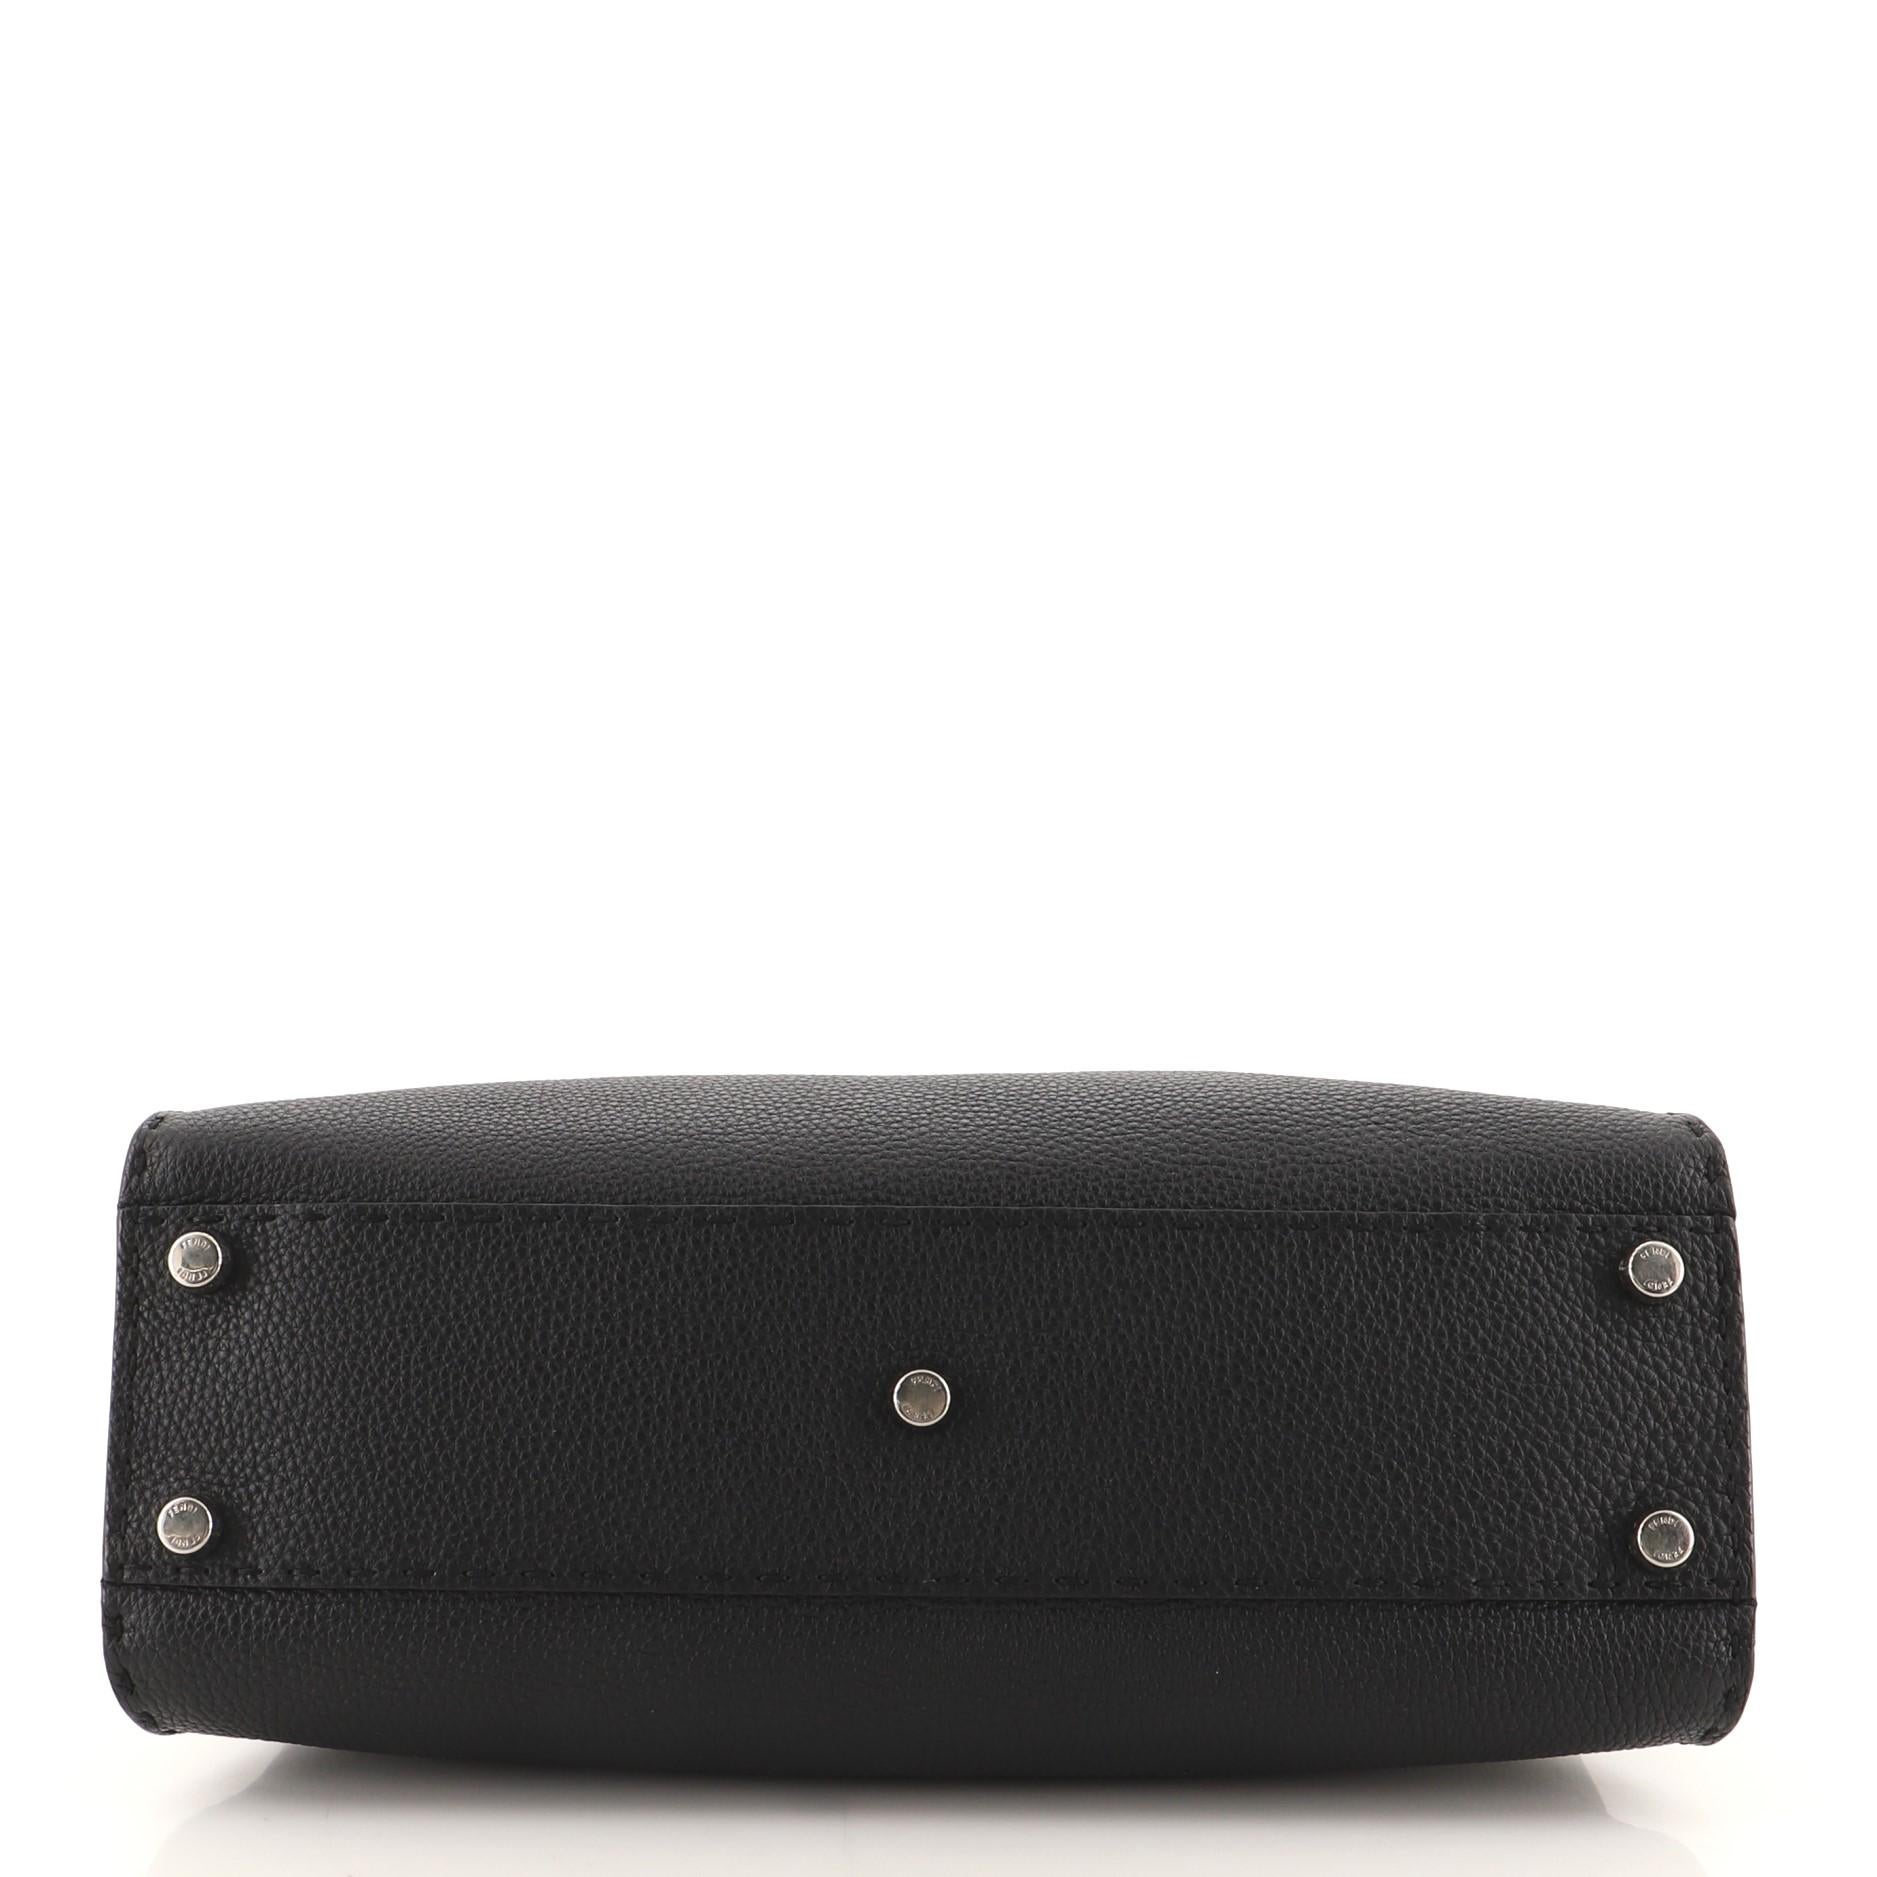 Black Fendi Selleria Peekaboo Bag Rigid Leather Regular